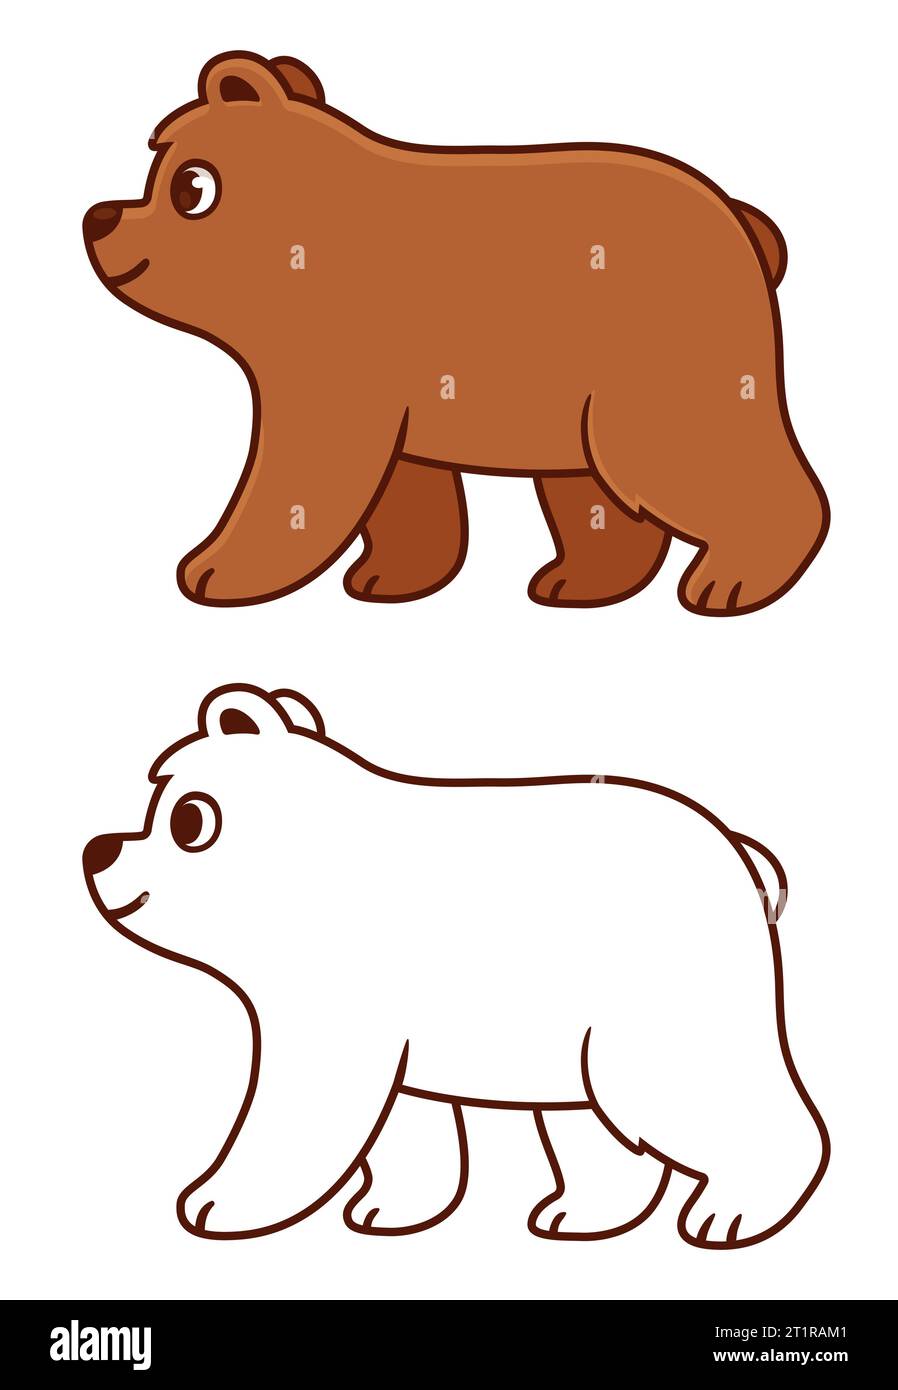 Carino disegno dell'orso del bambino dei cartoni animati. Orso bruno che cammina nella vista del profilo. Disegno a colori e nero e linee per la colorazione. Illustrazione della clip art vettoriale Illustrazione Vettoriale